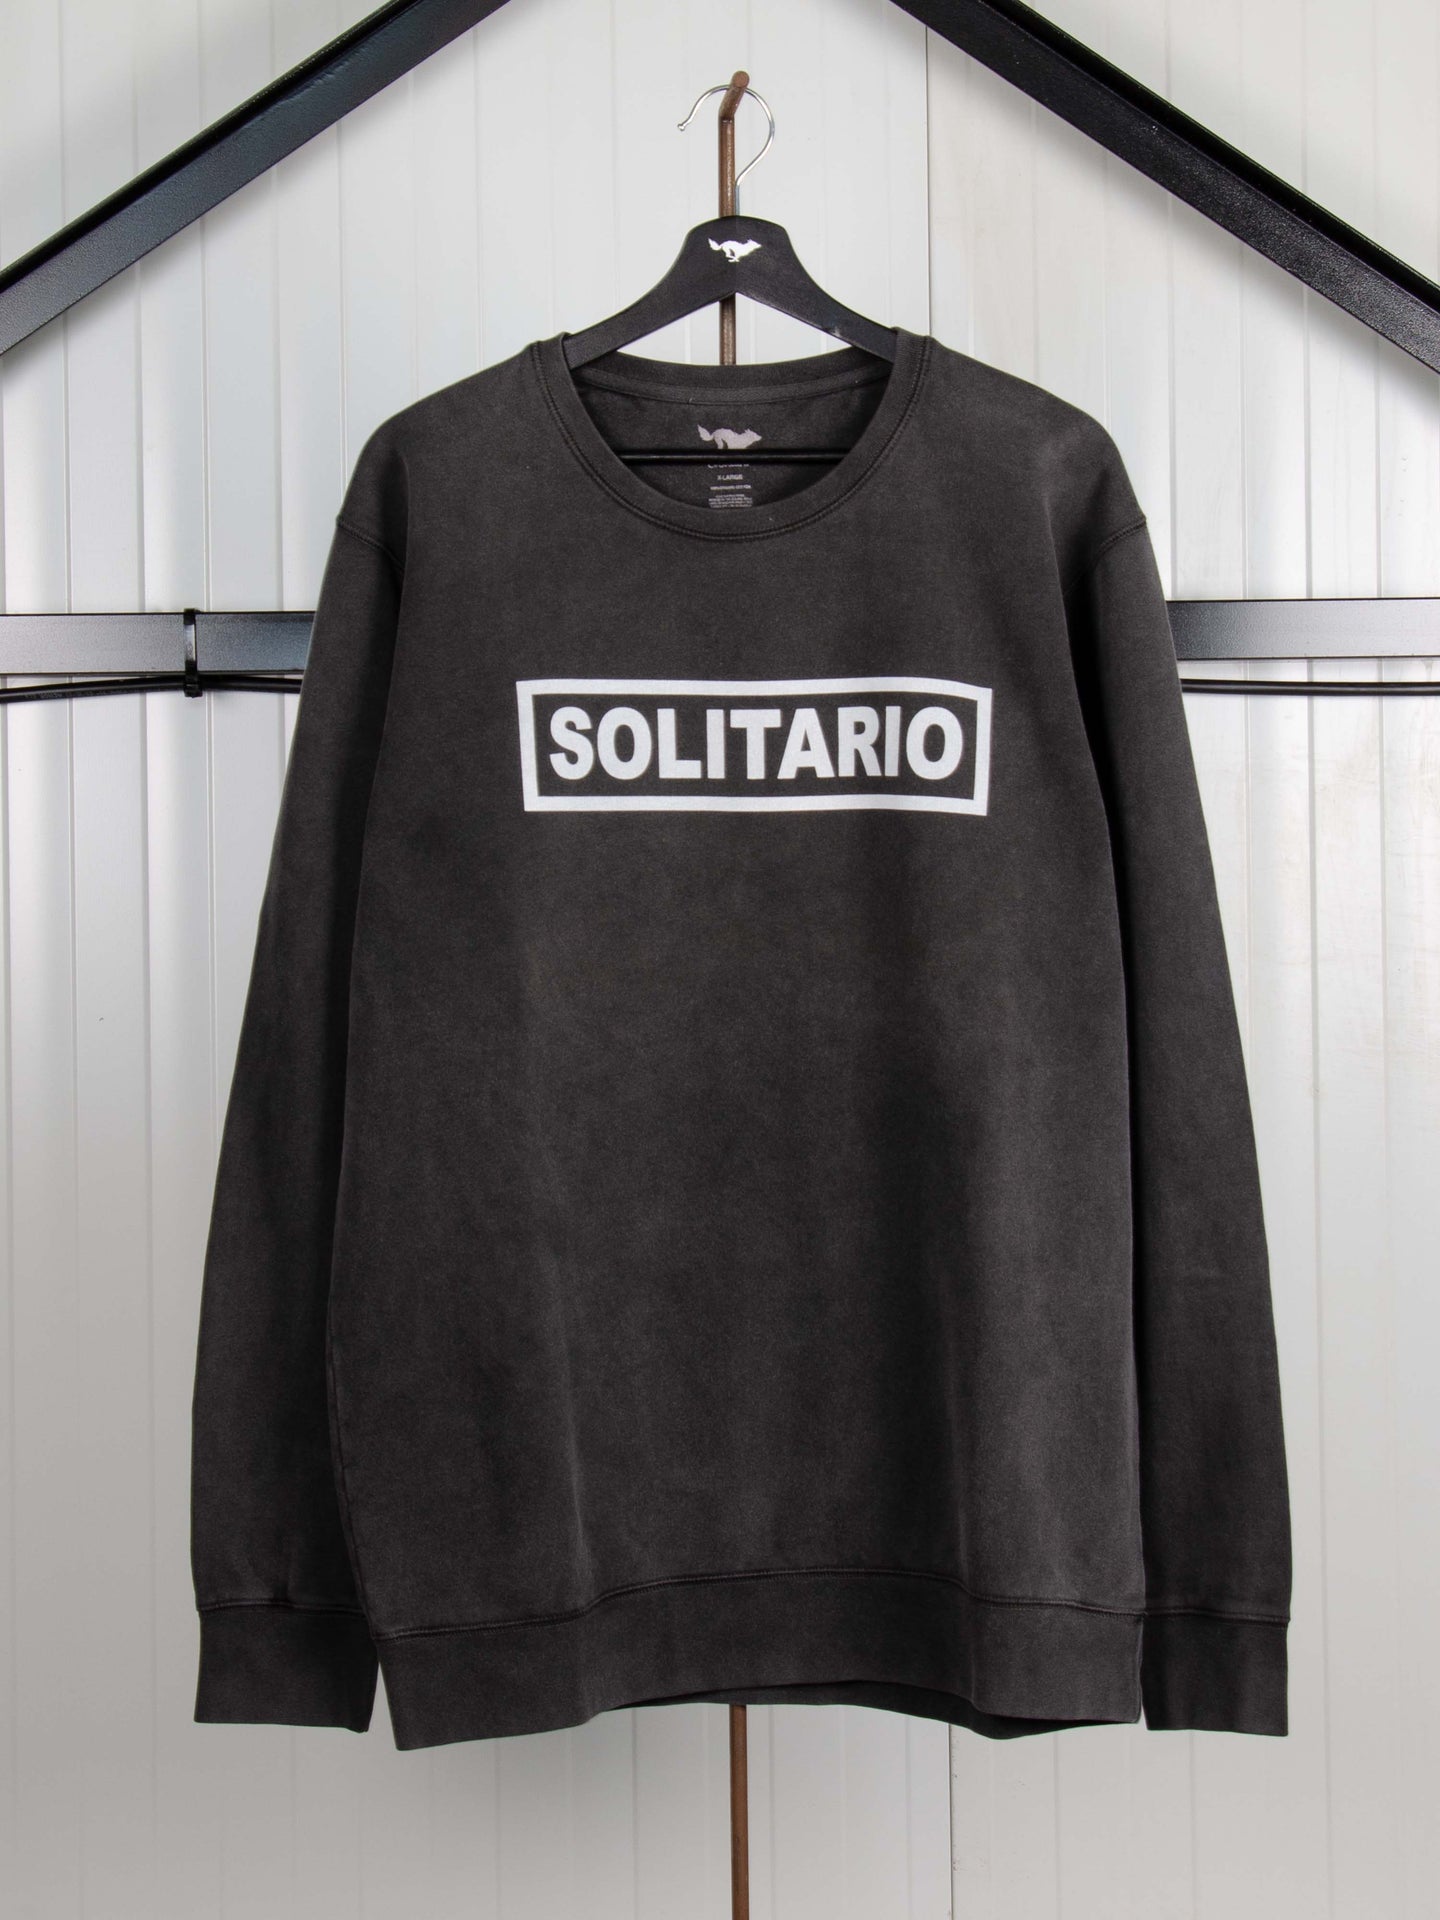 Solitario 2.0 Sweatshirt